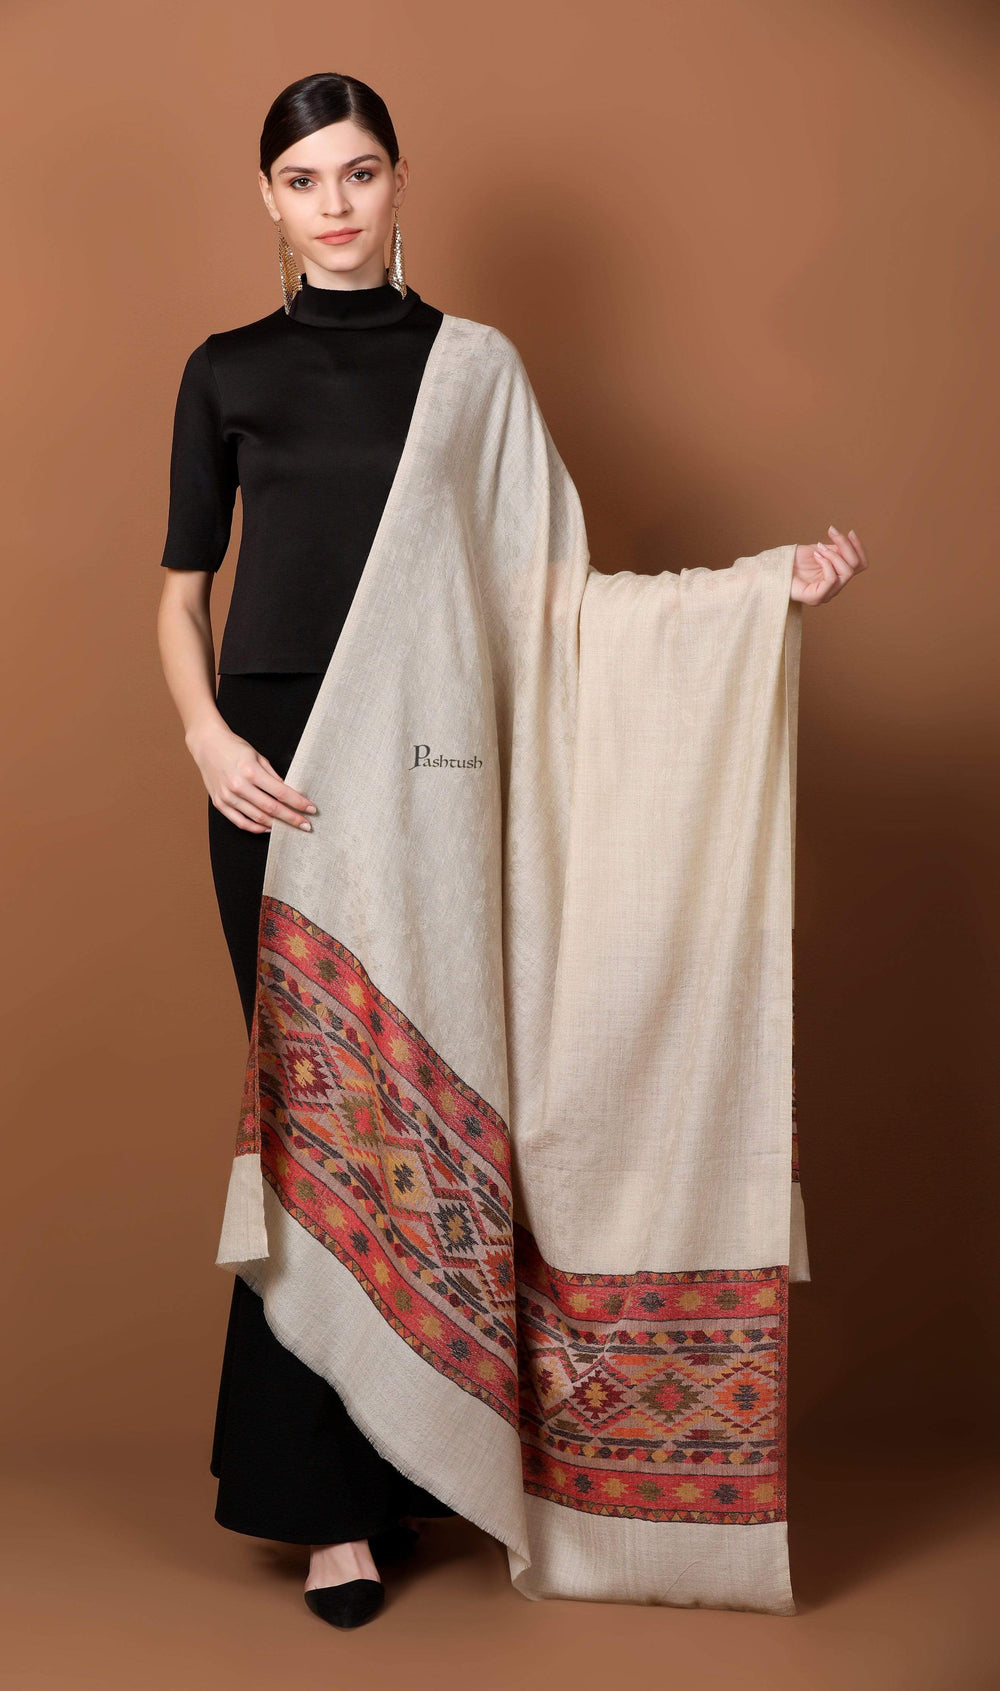 Pashtush Shawl Store Shawl Pashtush Womens Extra Fine Wool Shawl, Jacquard, Soft, Warm and Ultra Light Weight